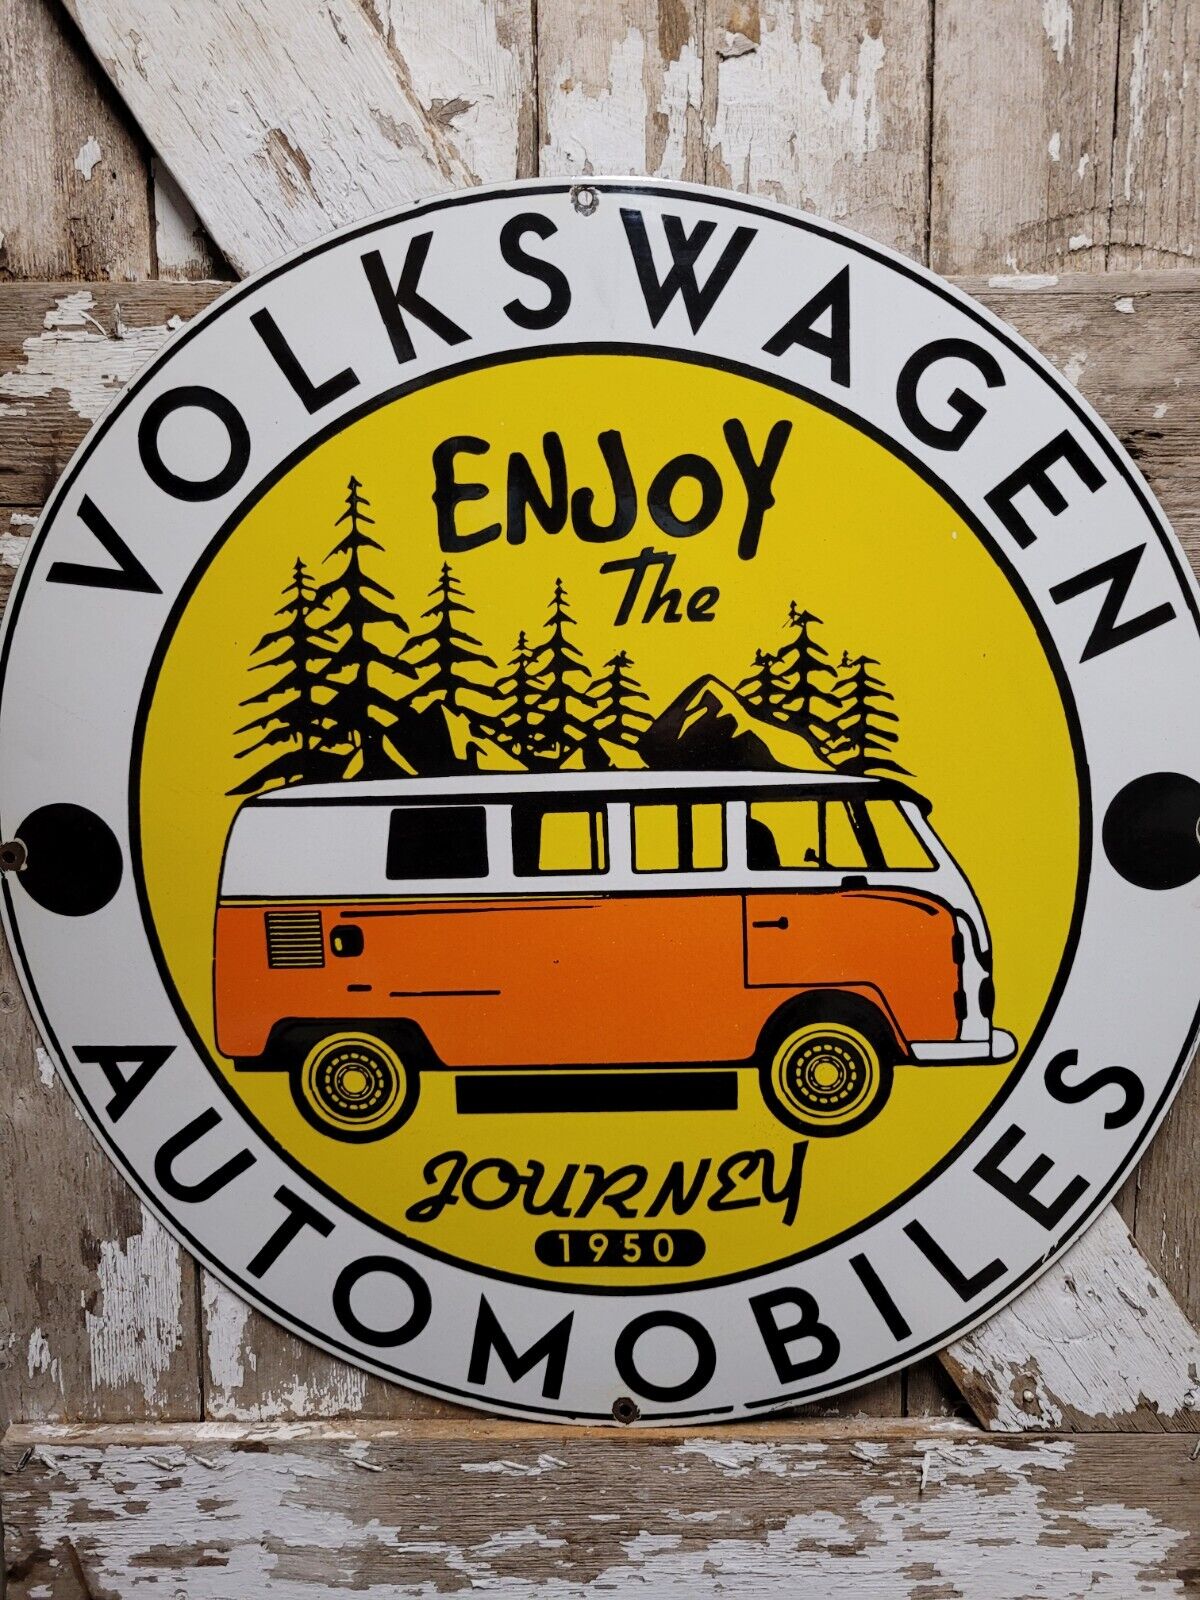 OLD VINTAGE VOLKSWAGEN PORCELAIN SIGN VW BUS ADVERTISING AUTOMOBILE CAR VAN 30